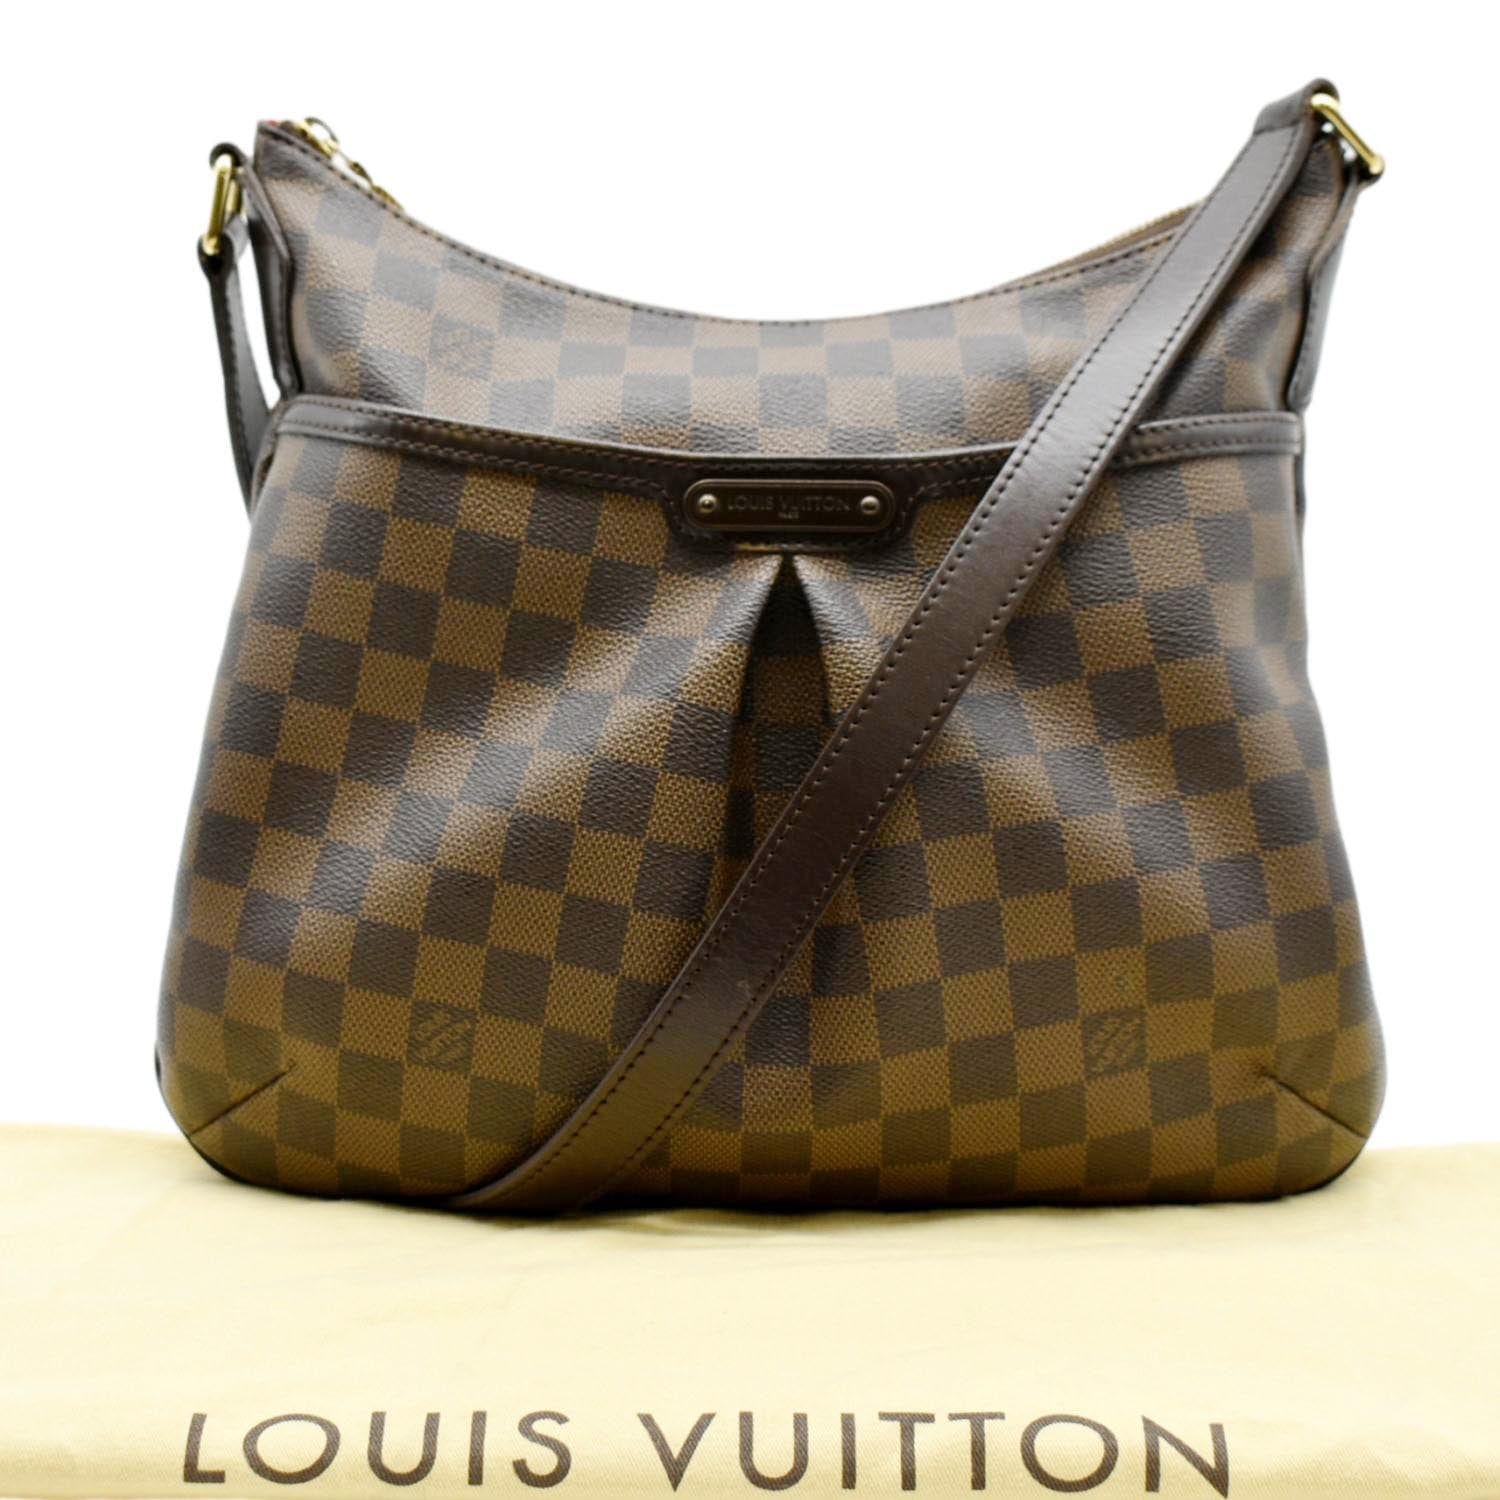 Louis Vuitton Speedy 20 Cross Body Bag, Tradesy